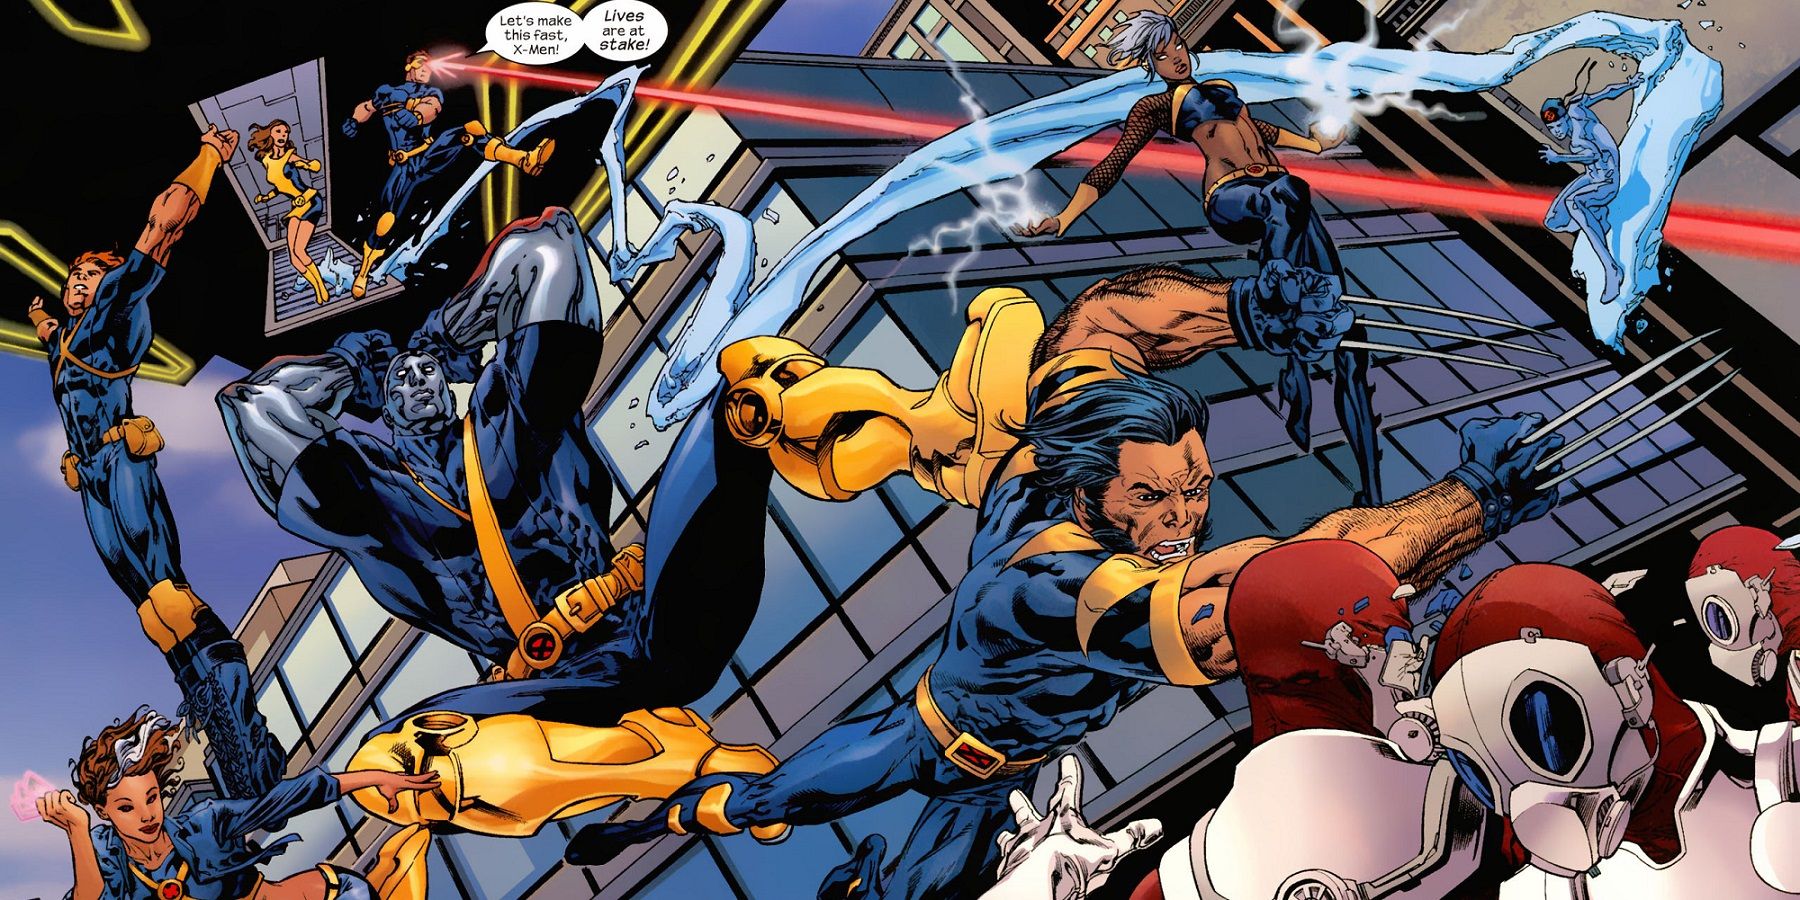 Ultimate X-Men Comic